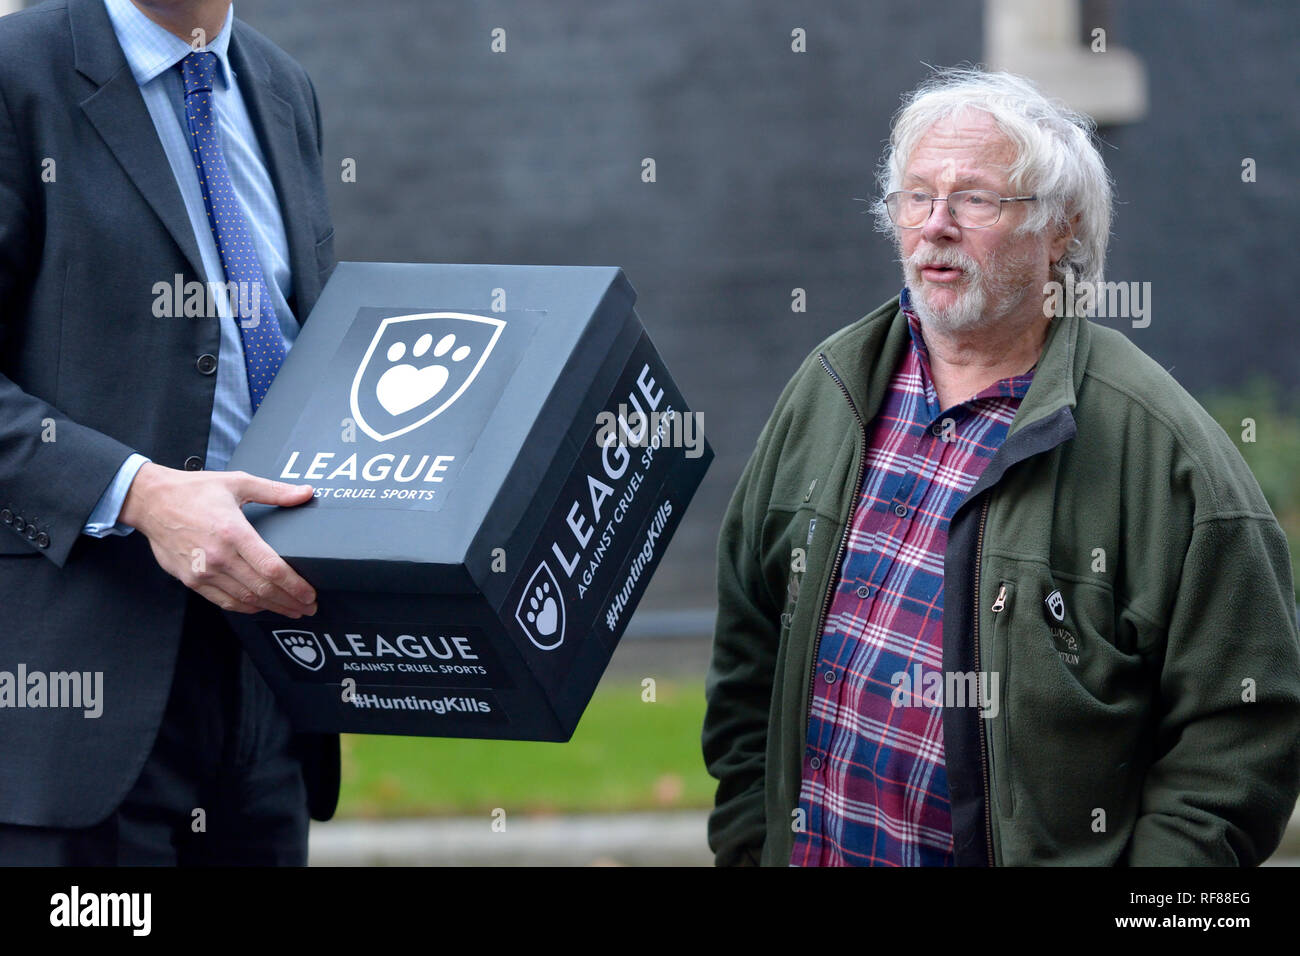 Bill Oddie y miembros de la Liga contra los deportes crueles entregar una petición al 10 de Downing Street, 19 de diciembre de 2018 Foto de stock